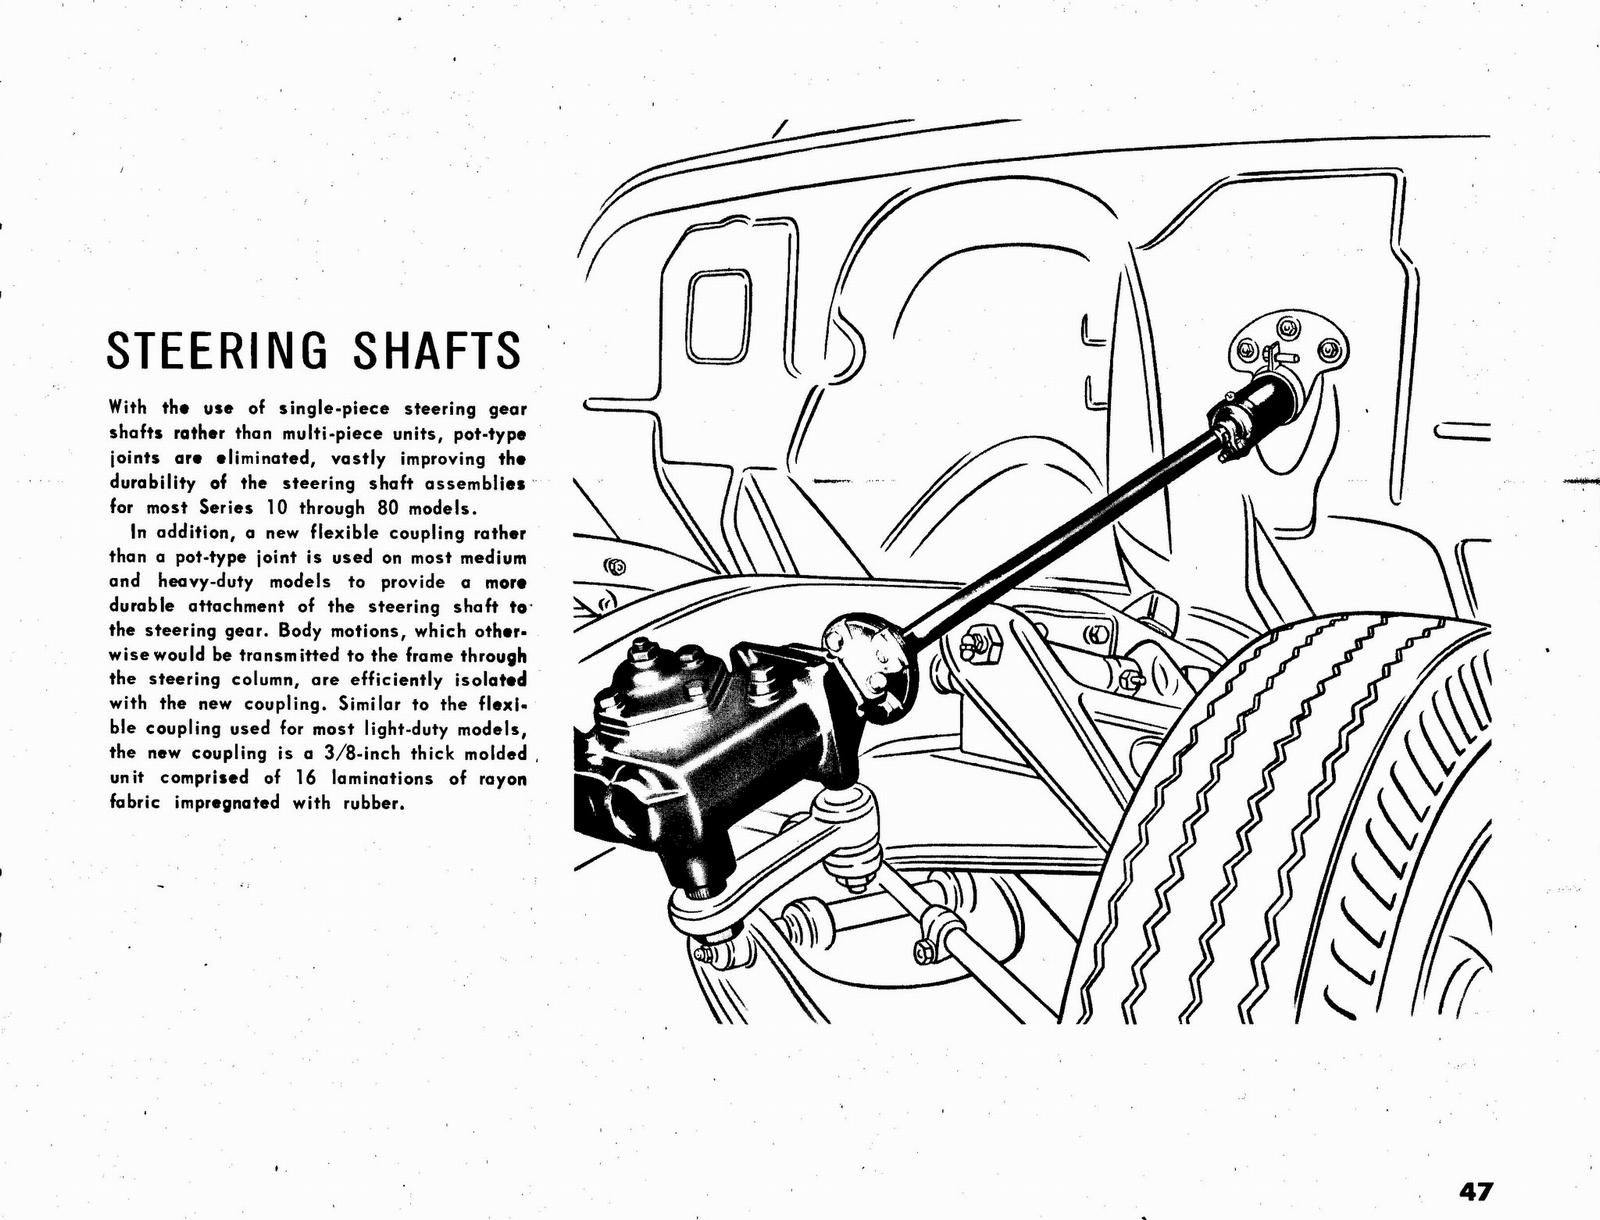 n_1963 Chevrolet Truck Engineering Features-47.jpg